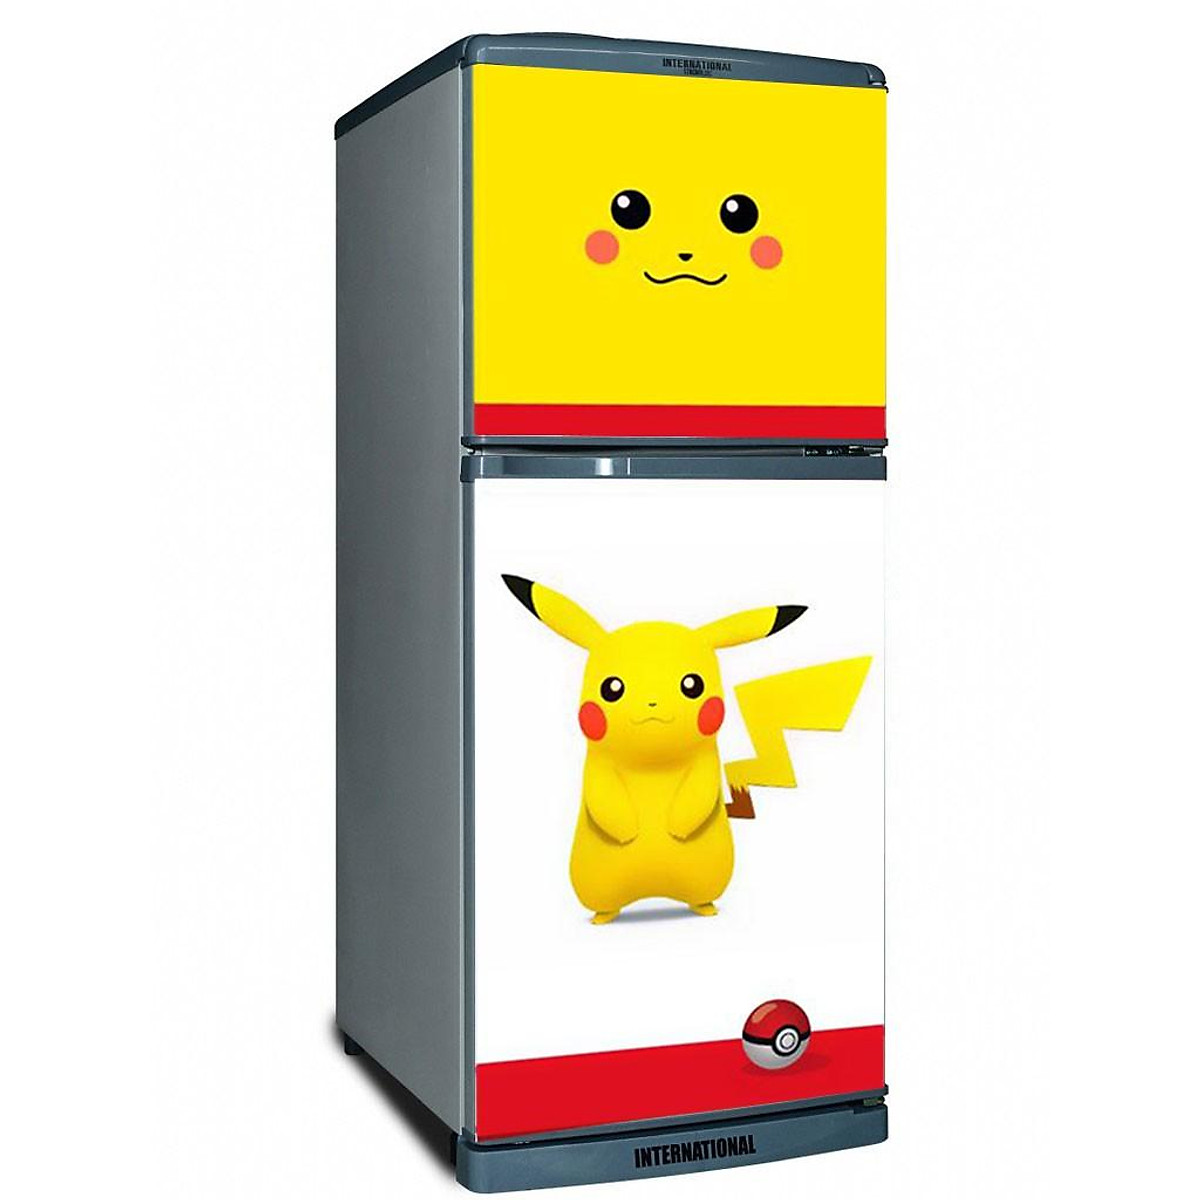 Decal trang trí tủ lạnh mẫu pikachu cute chống thấm cao cấp